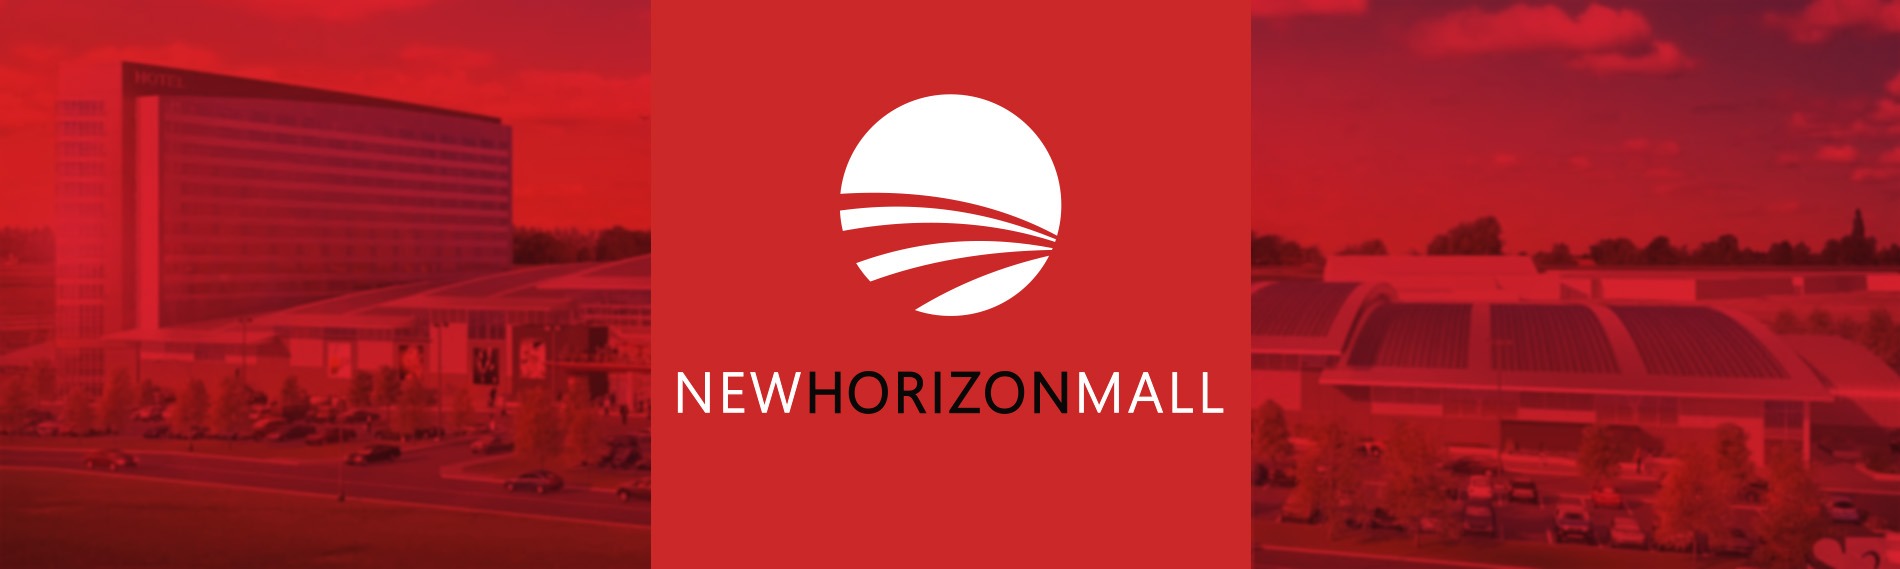 New Horizon Mall Banner